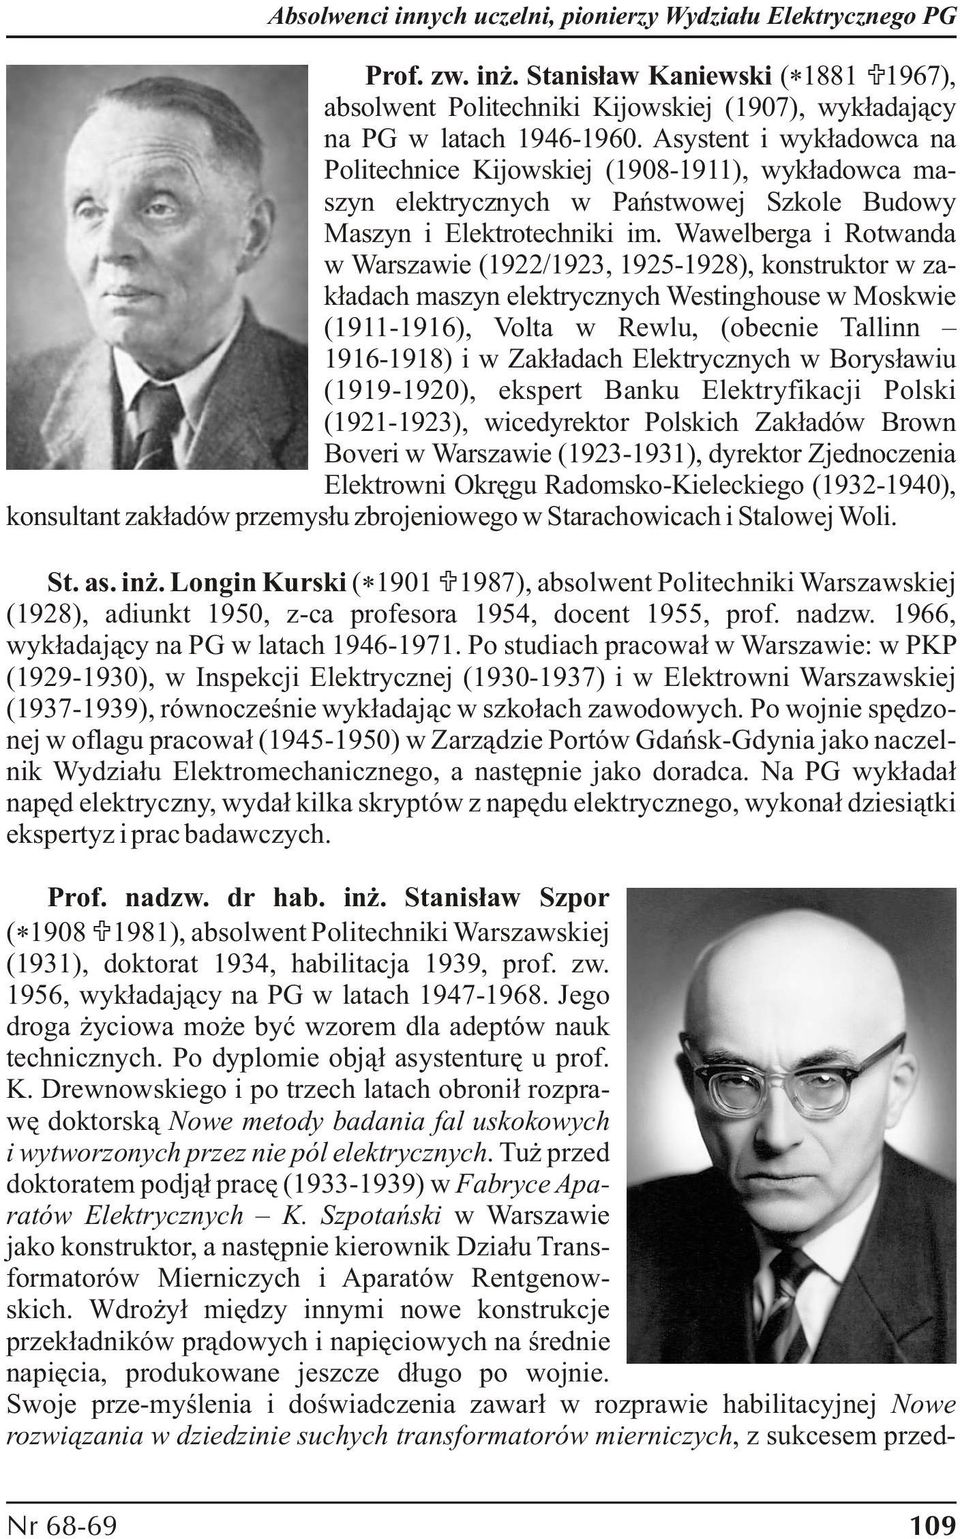 Wawelberga i Rotwanda w Warszawie (1922/1923, 1925-1928), konstruktor w zakładach maszyn elektrycznych Westinghouse w Moskwie (1911-1916), Volta w Rewlu, (obecnie Tallinn 1916-1918) i w Zakładach